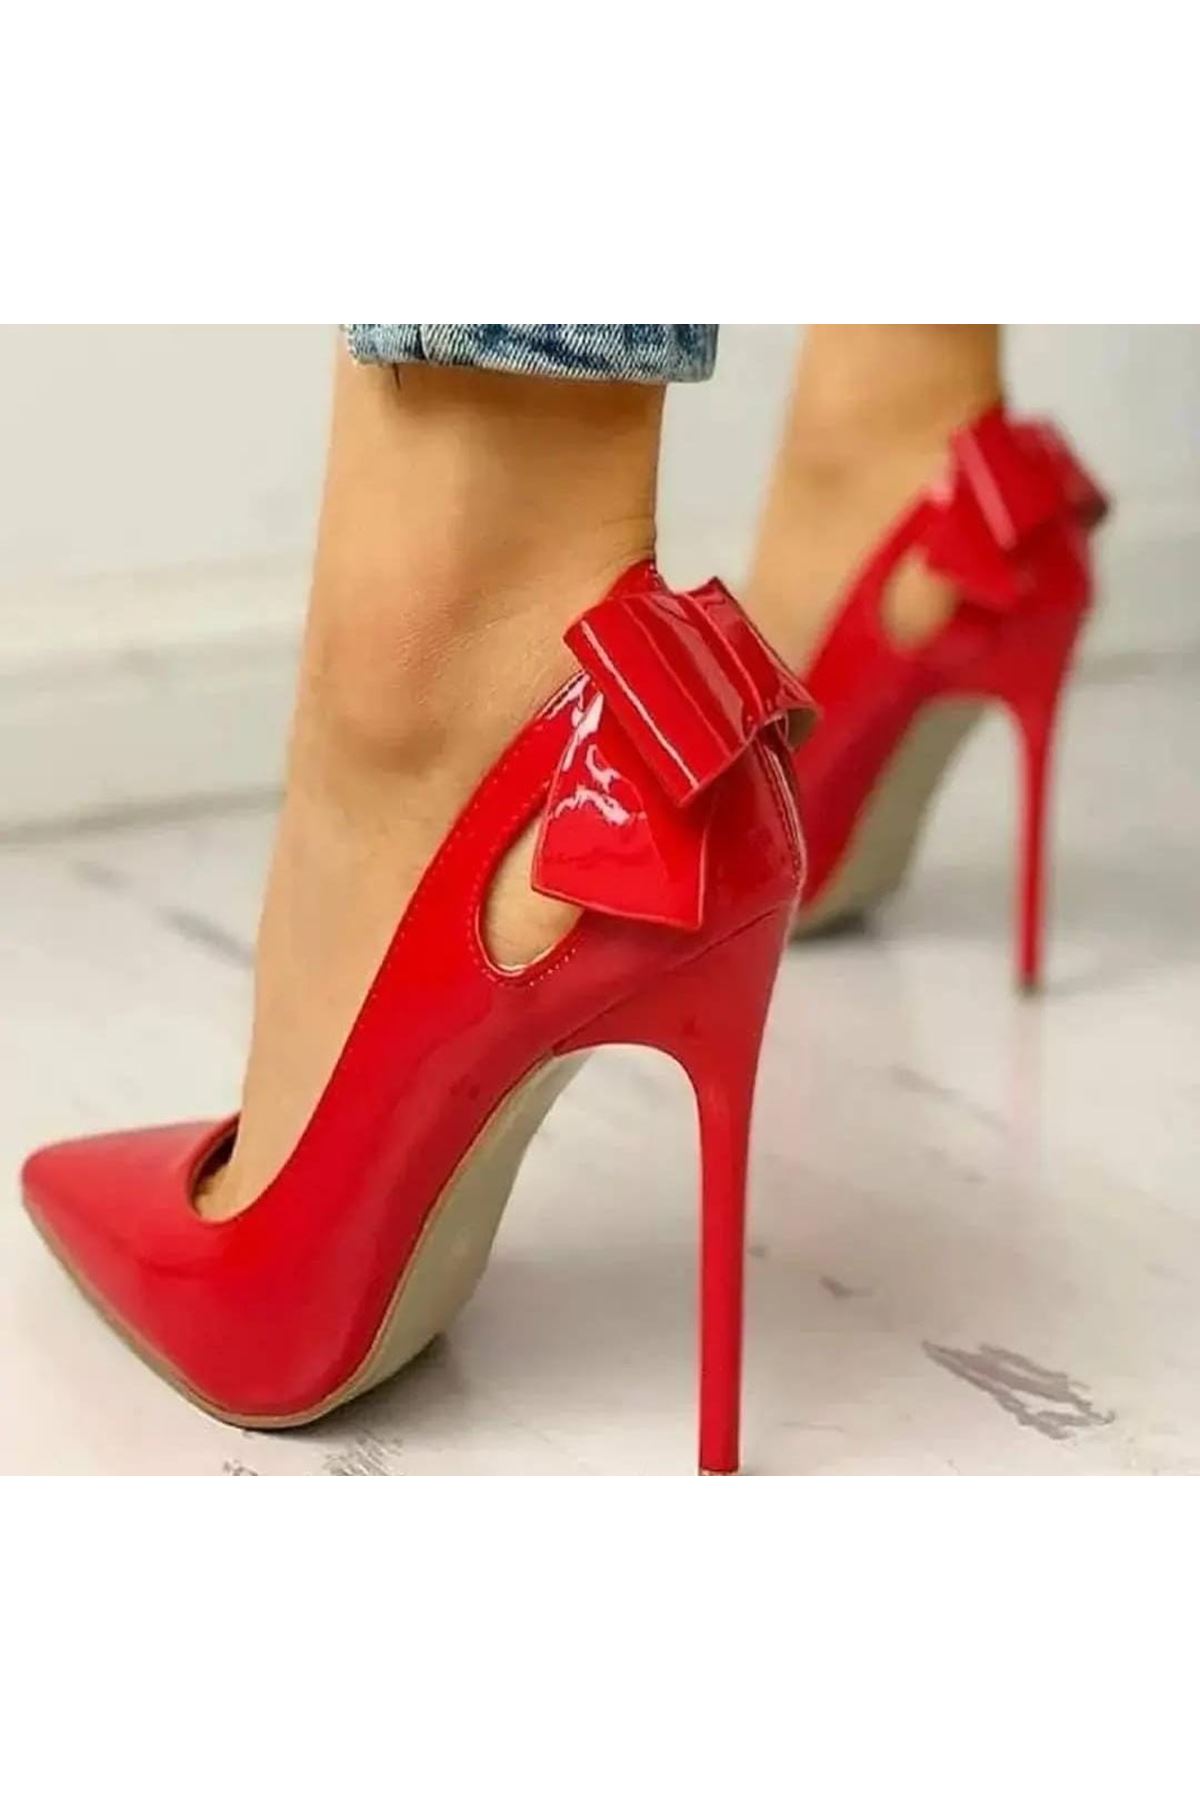 Dicky Papyonlu Kırmızı Rugan Kadın Ayakkabı